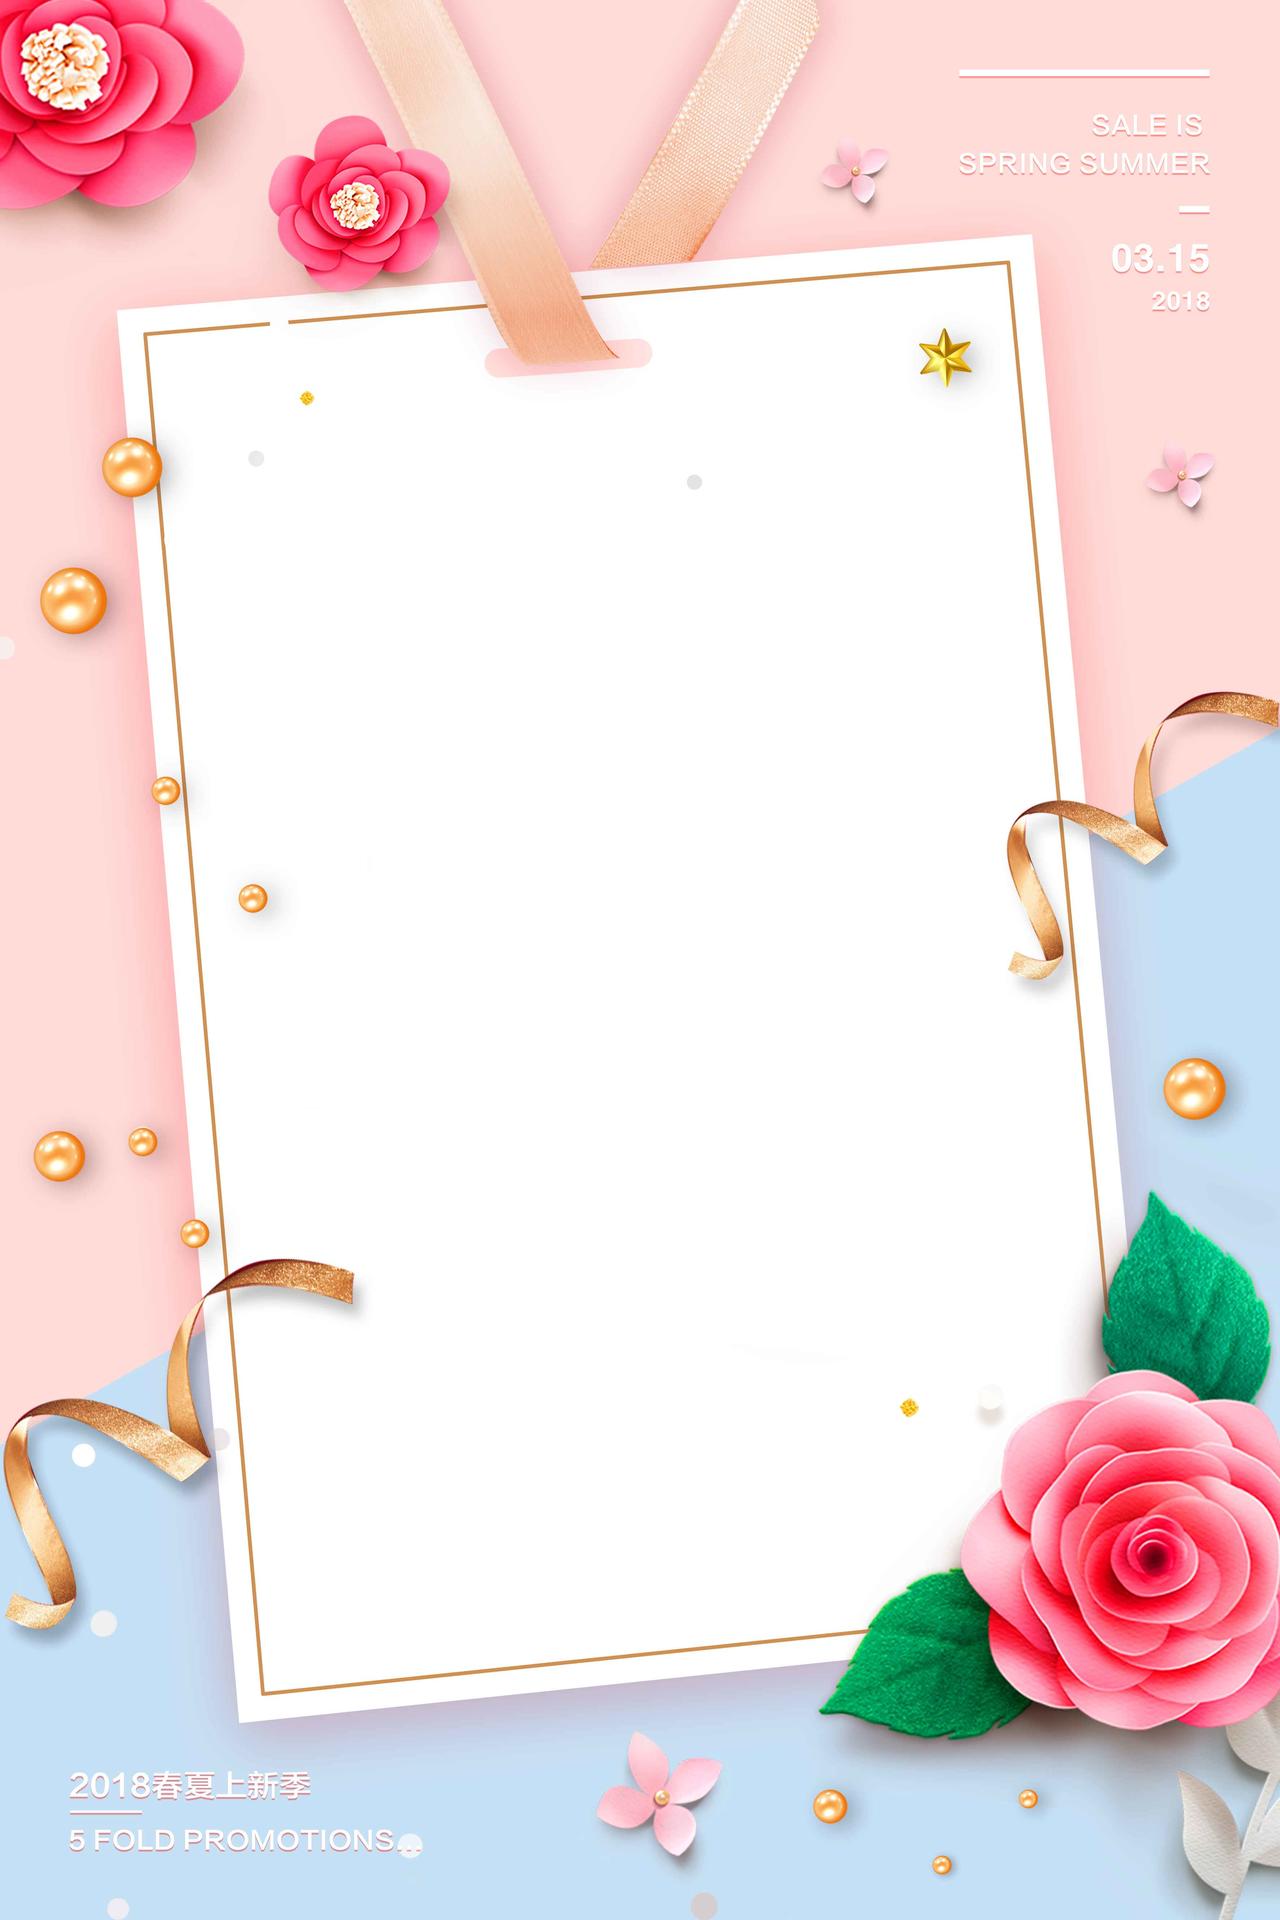 粉色边框彩带花朵夏天活动促销打折海报背景展板